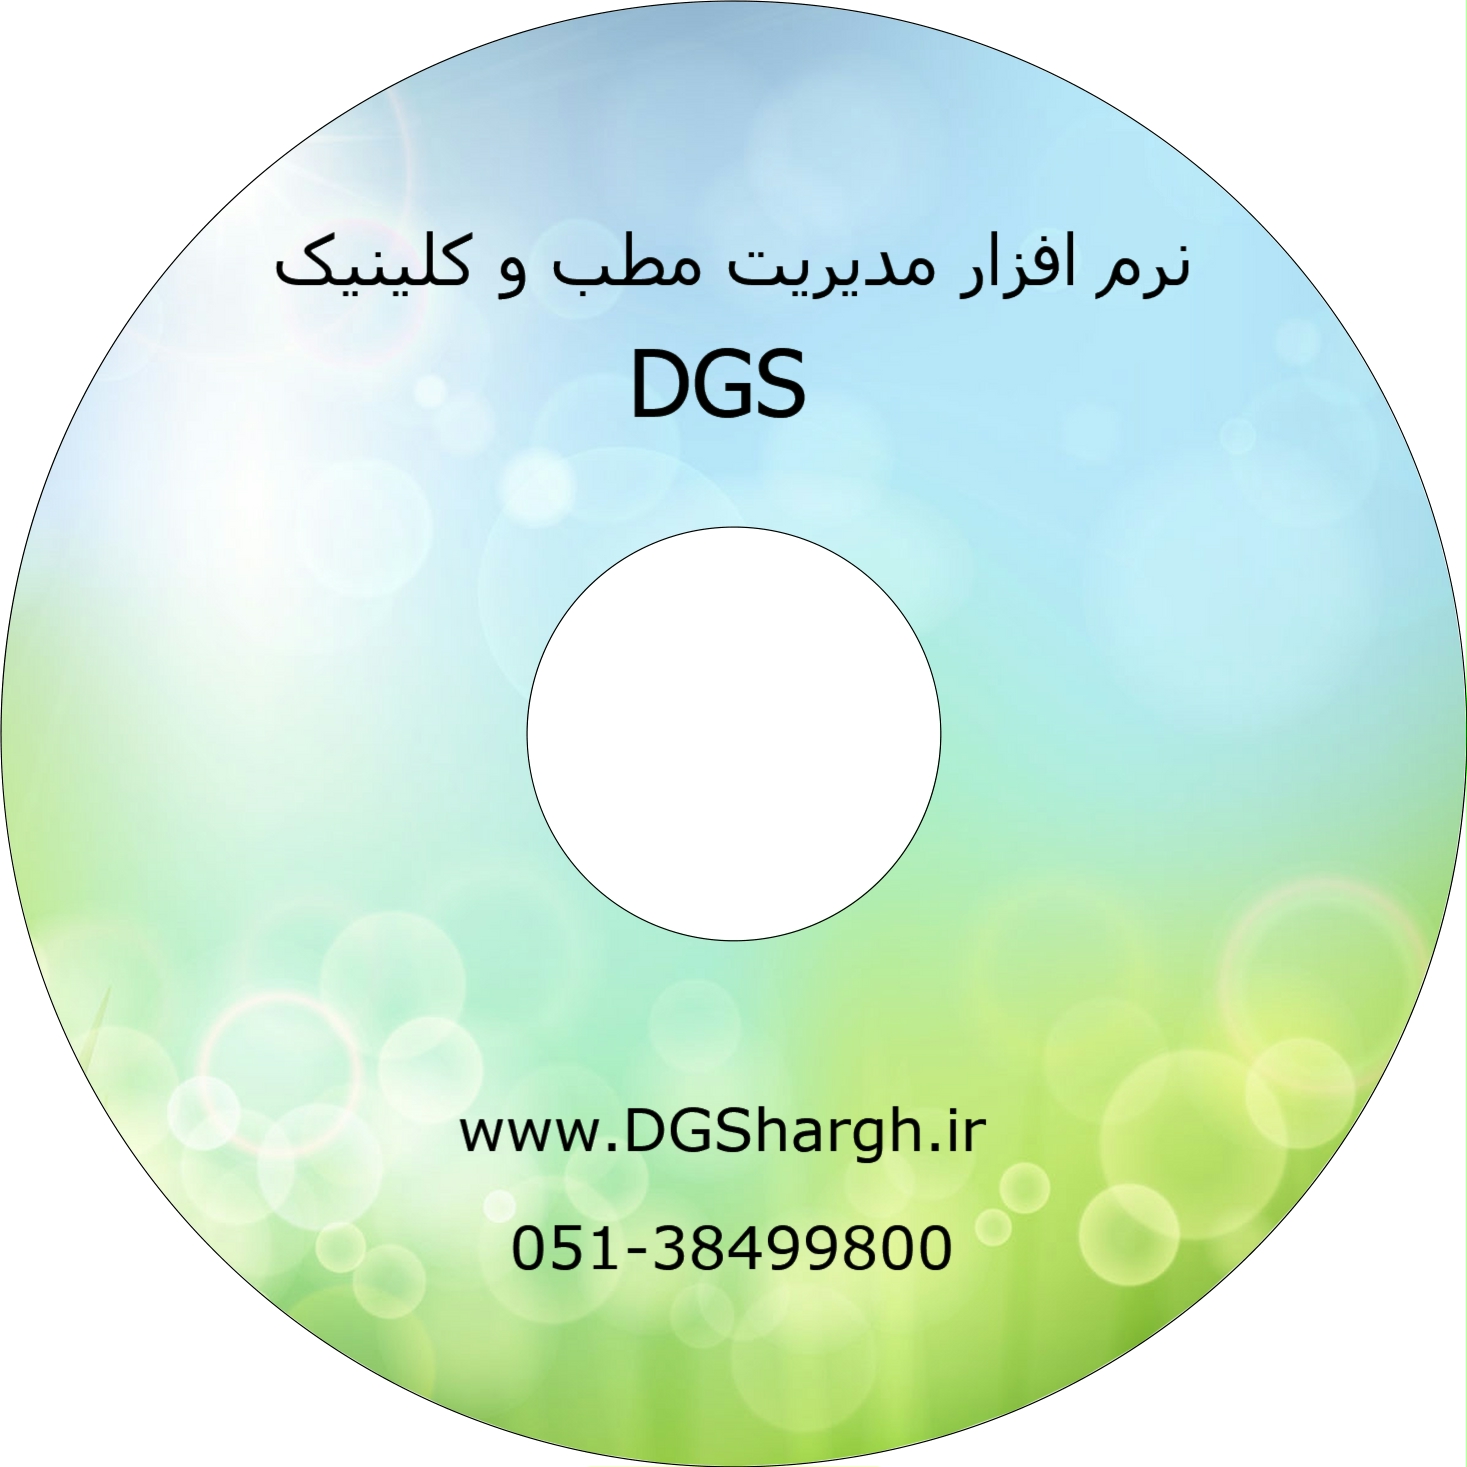 نرم افزار مدیریت مطب DGSTEB مدیریت کلینیک مدیریت مطب مشهد DGS A